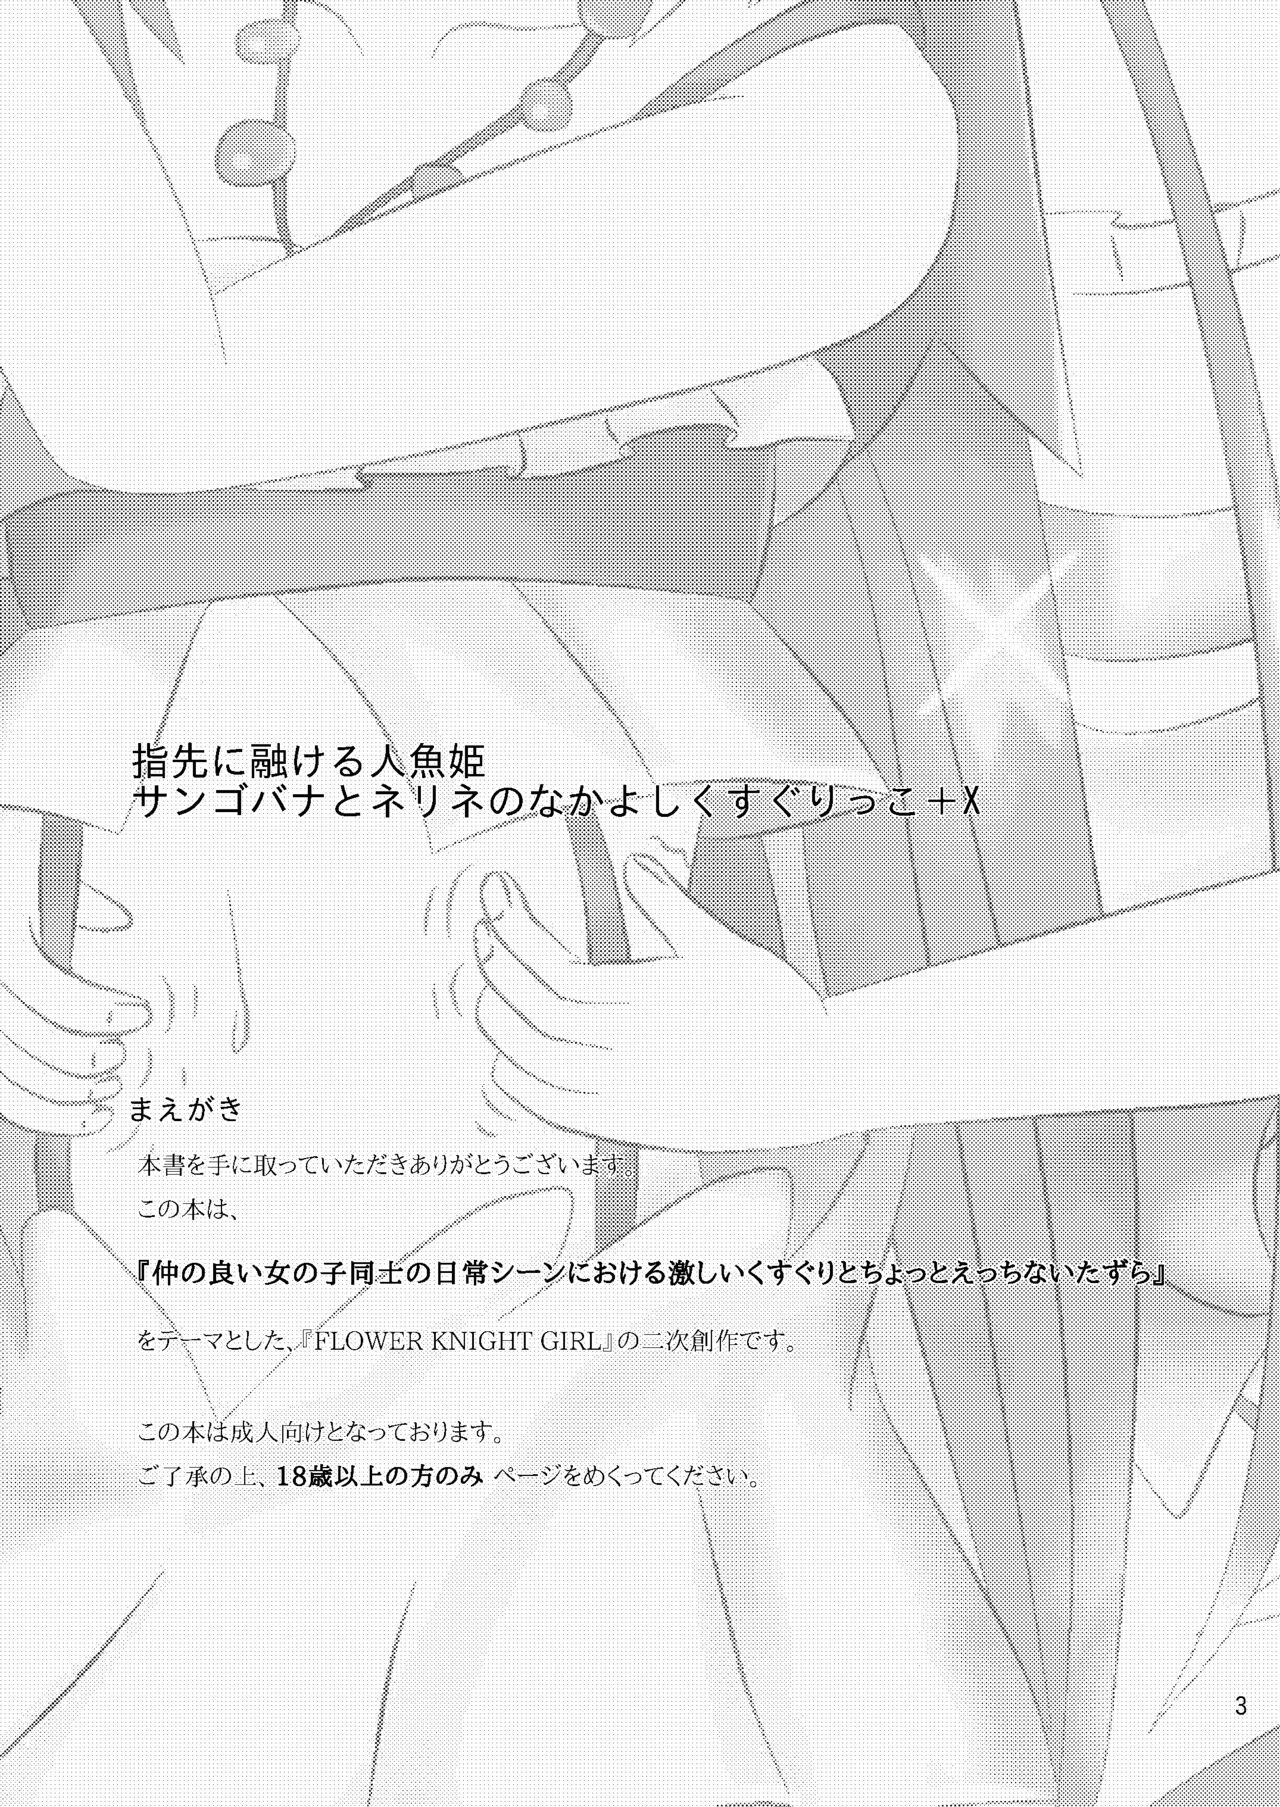 Petite Teenager Yubisaki ni Tokeru Ningyohime - Sangobana to Nerine no Nakayoshi Kusugurikko + X - Flower knight girl Aunt - Page 3